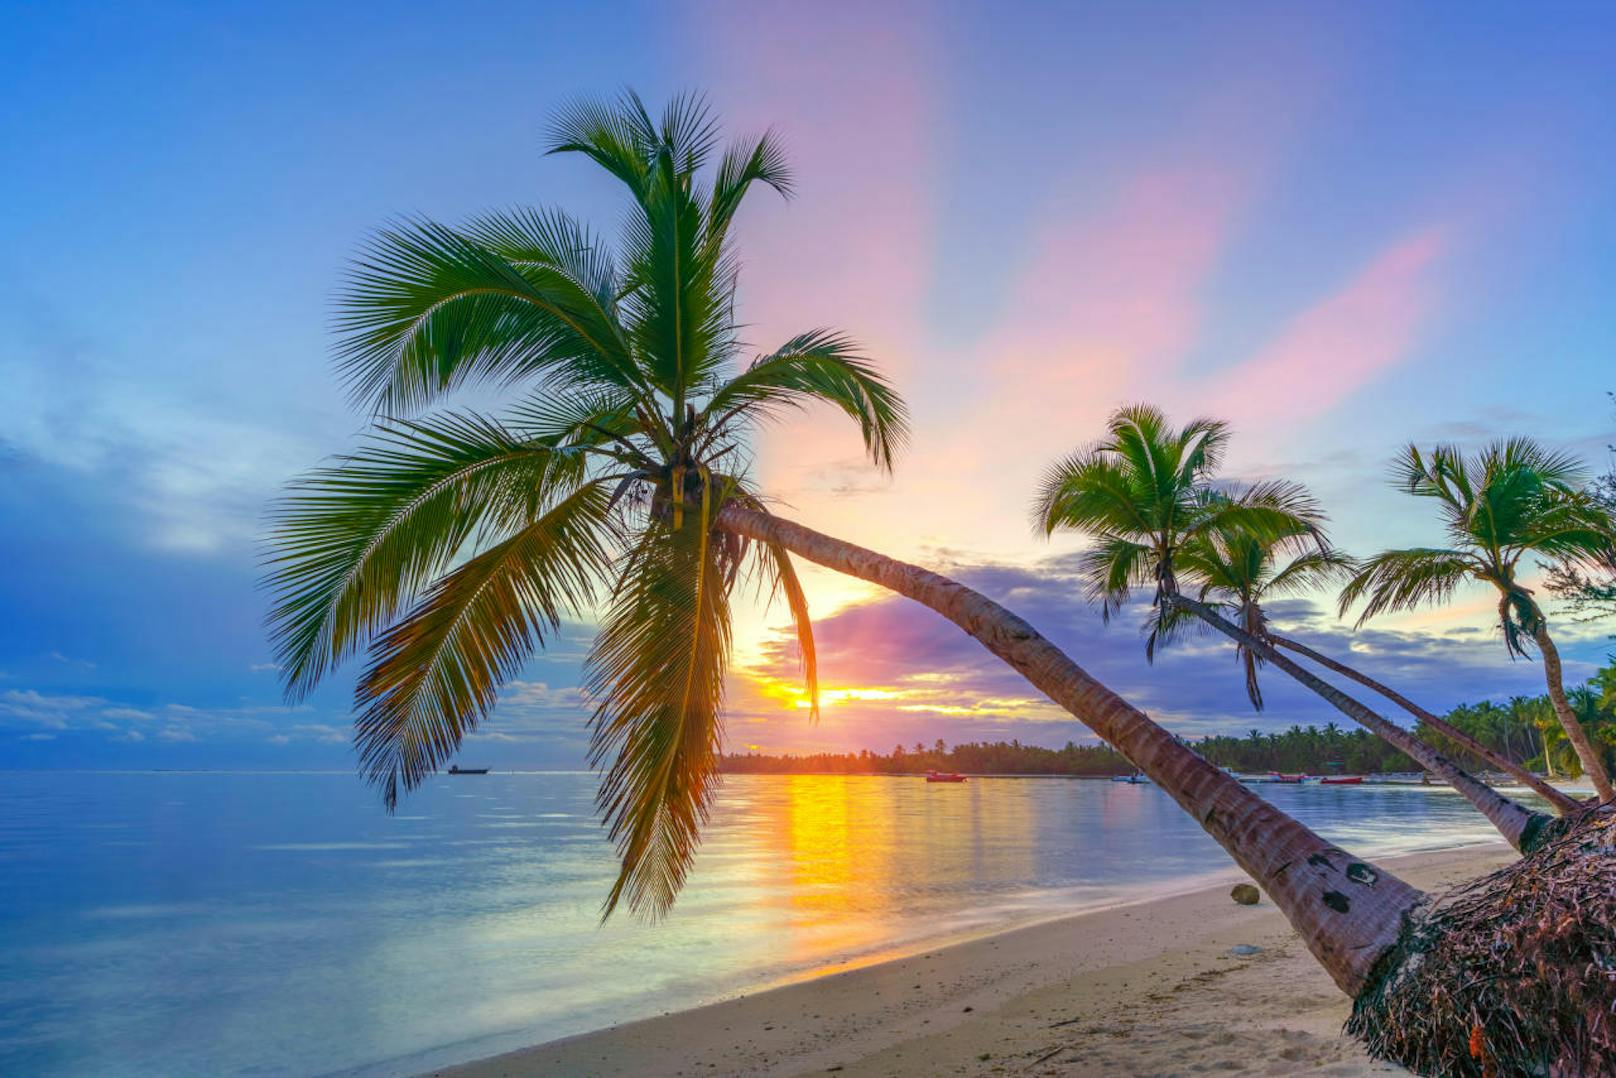 <b>7. Dominikanische Republik - bis zu 7,5 Sonnenstunden pro Tag</b>

Dezember ist die optimale Reisezeit für die Dominikanische Republik, da die Hurrikan-Saison vorbei ist und die trockene, weitestgehend sonnige Zeit des Jahres beginnt. Bei rund siebeneinhalb Sonnenstunden am Tag genießen Badegäste die hochsommerliche Wärme an den weißen Stränden und im durchschnittlich 27 Grad warmen Meerwasser.